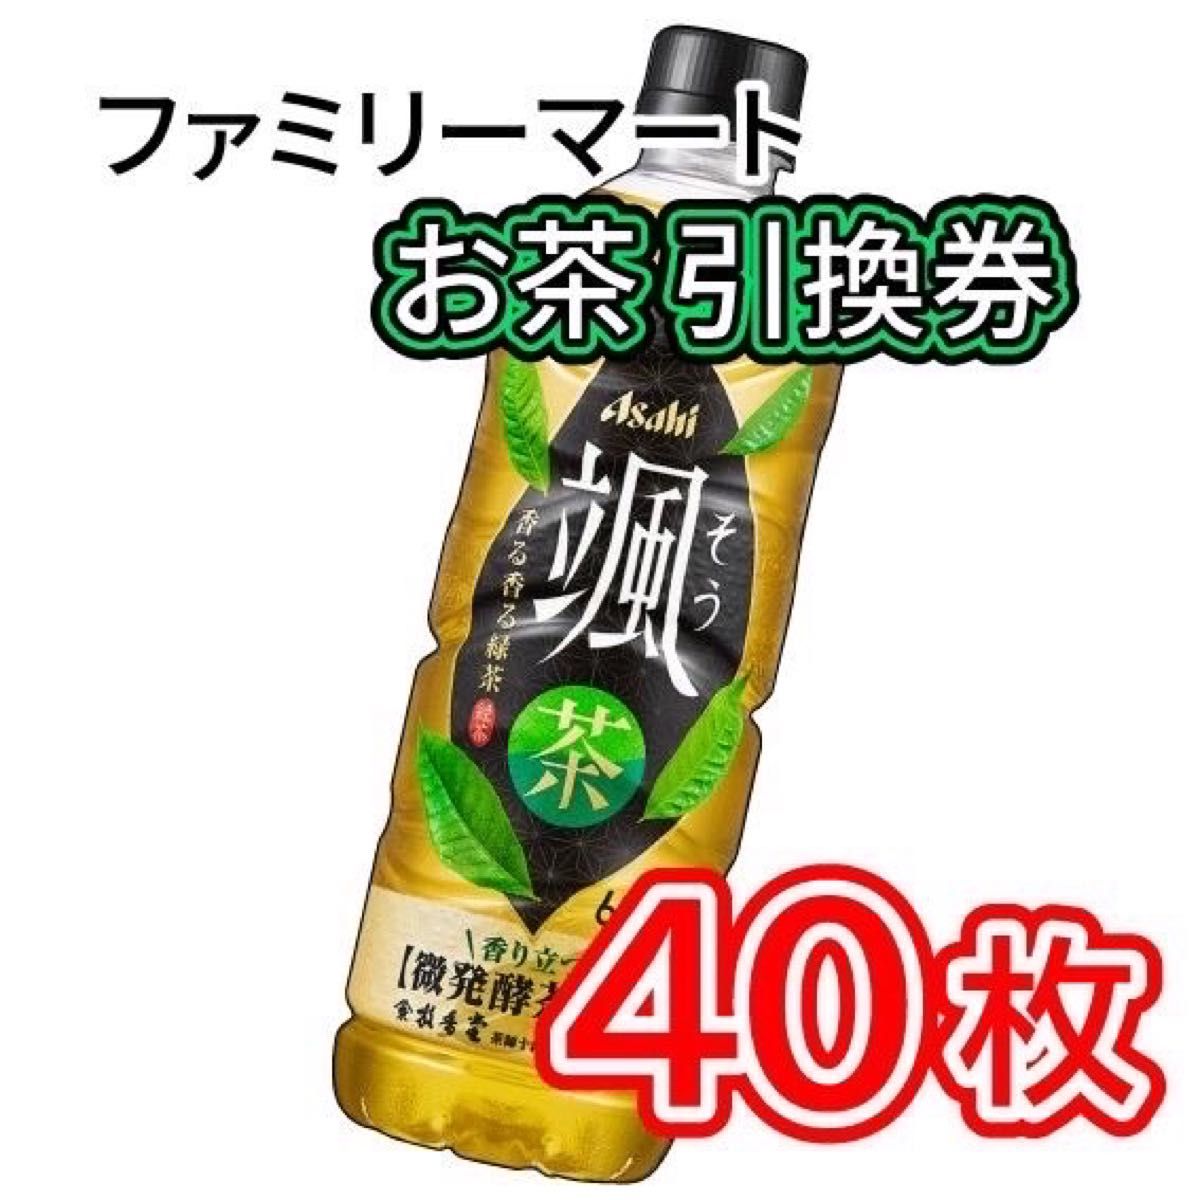 001 / ファミリーマート お茶 引換券 40枚